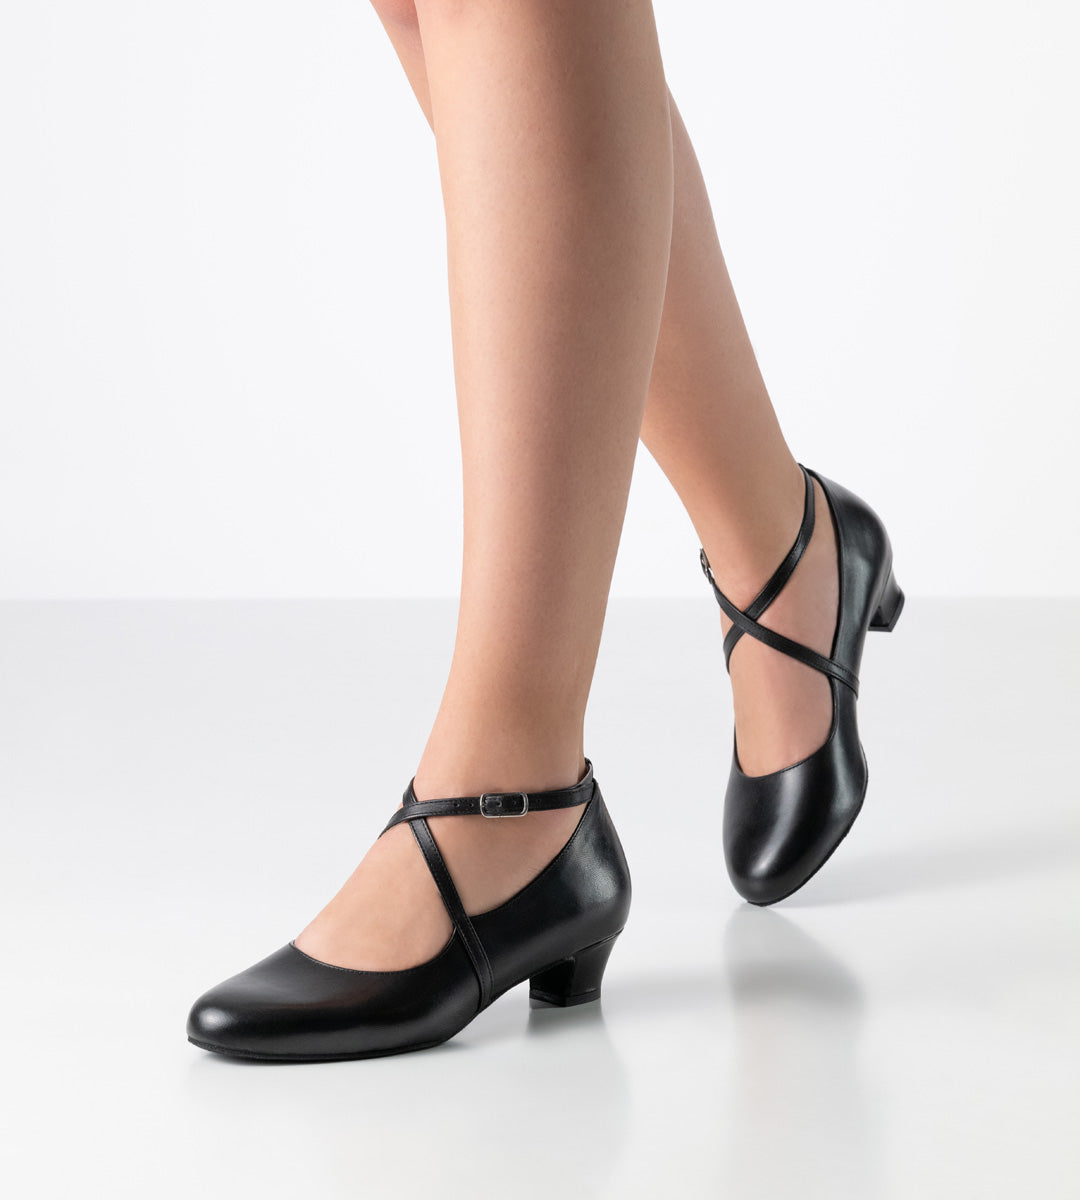 satin black dance heel for ladies